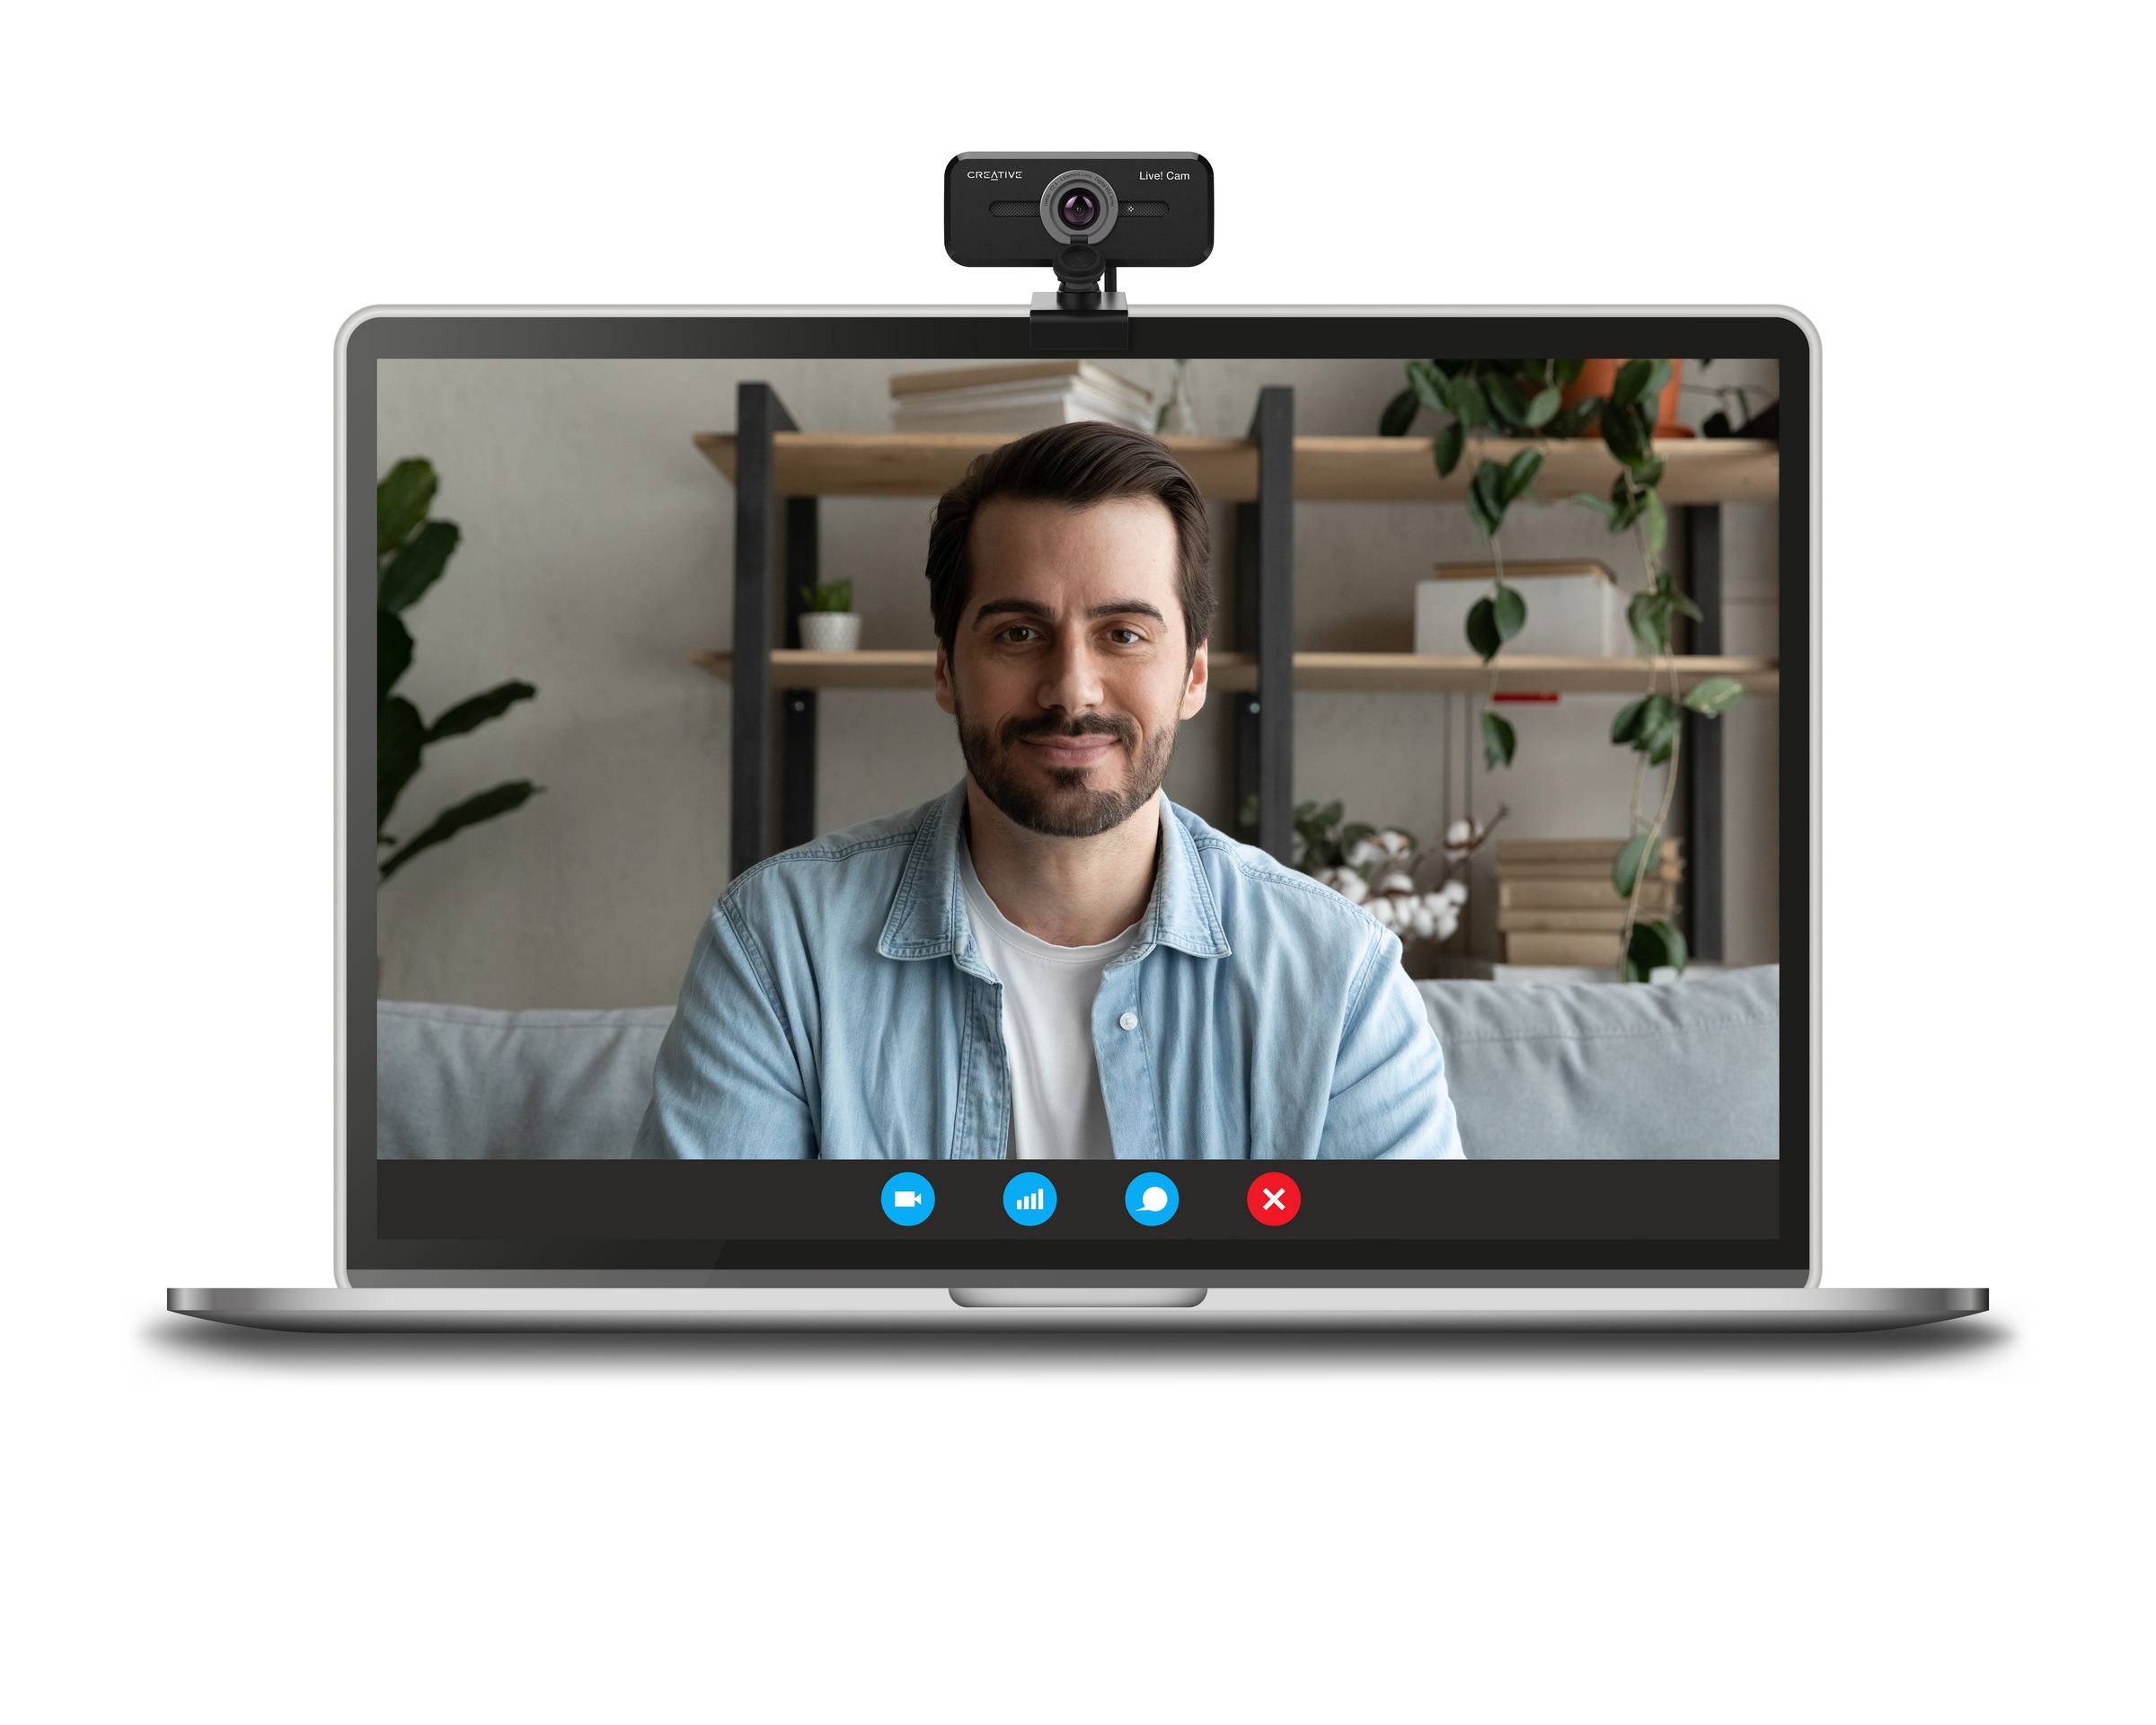 Creative Webcam »Live! Cam Sync V3«